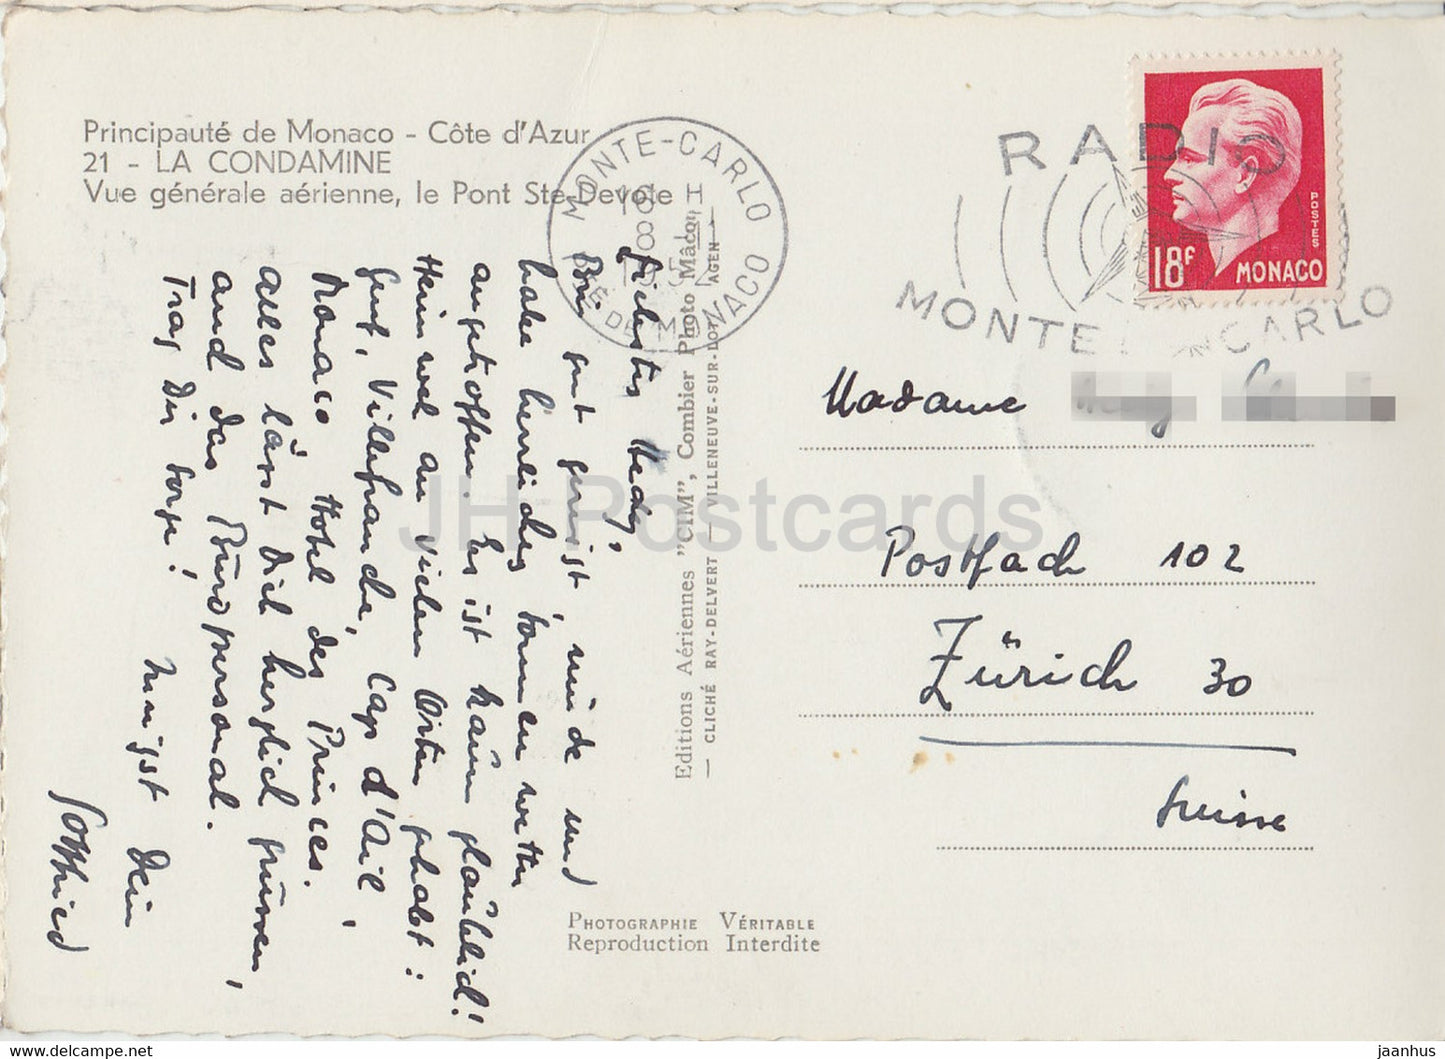 La Condamine - Vue generale aerienne le Pont Ste Devote - alte Postkarte - 1952 - Monaco - gebraucht